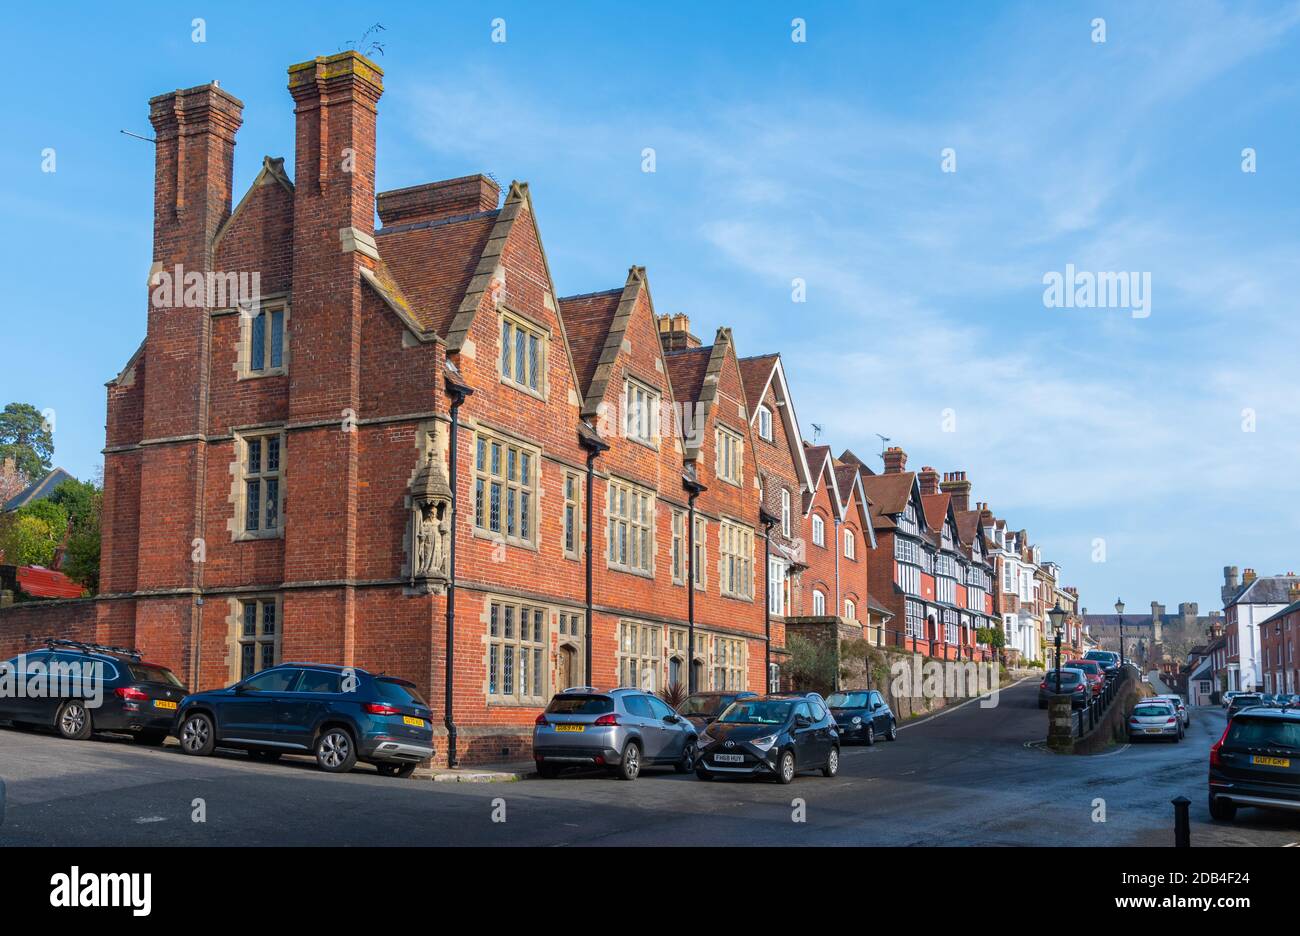 Wohngebäude mit einem denkmalgeschützten Gebäude aus dem 19th. Jahrhundert in der Maltravers Street in Arundel, West Sussex, England, Großbritannien. Stockfoto